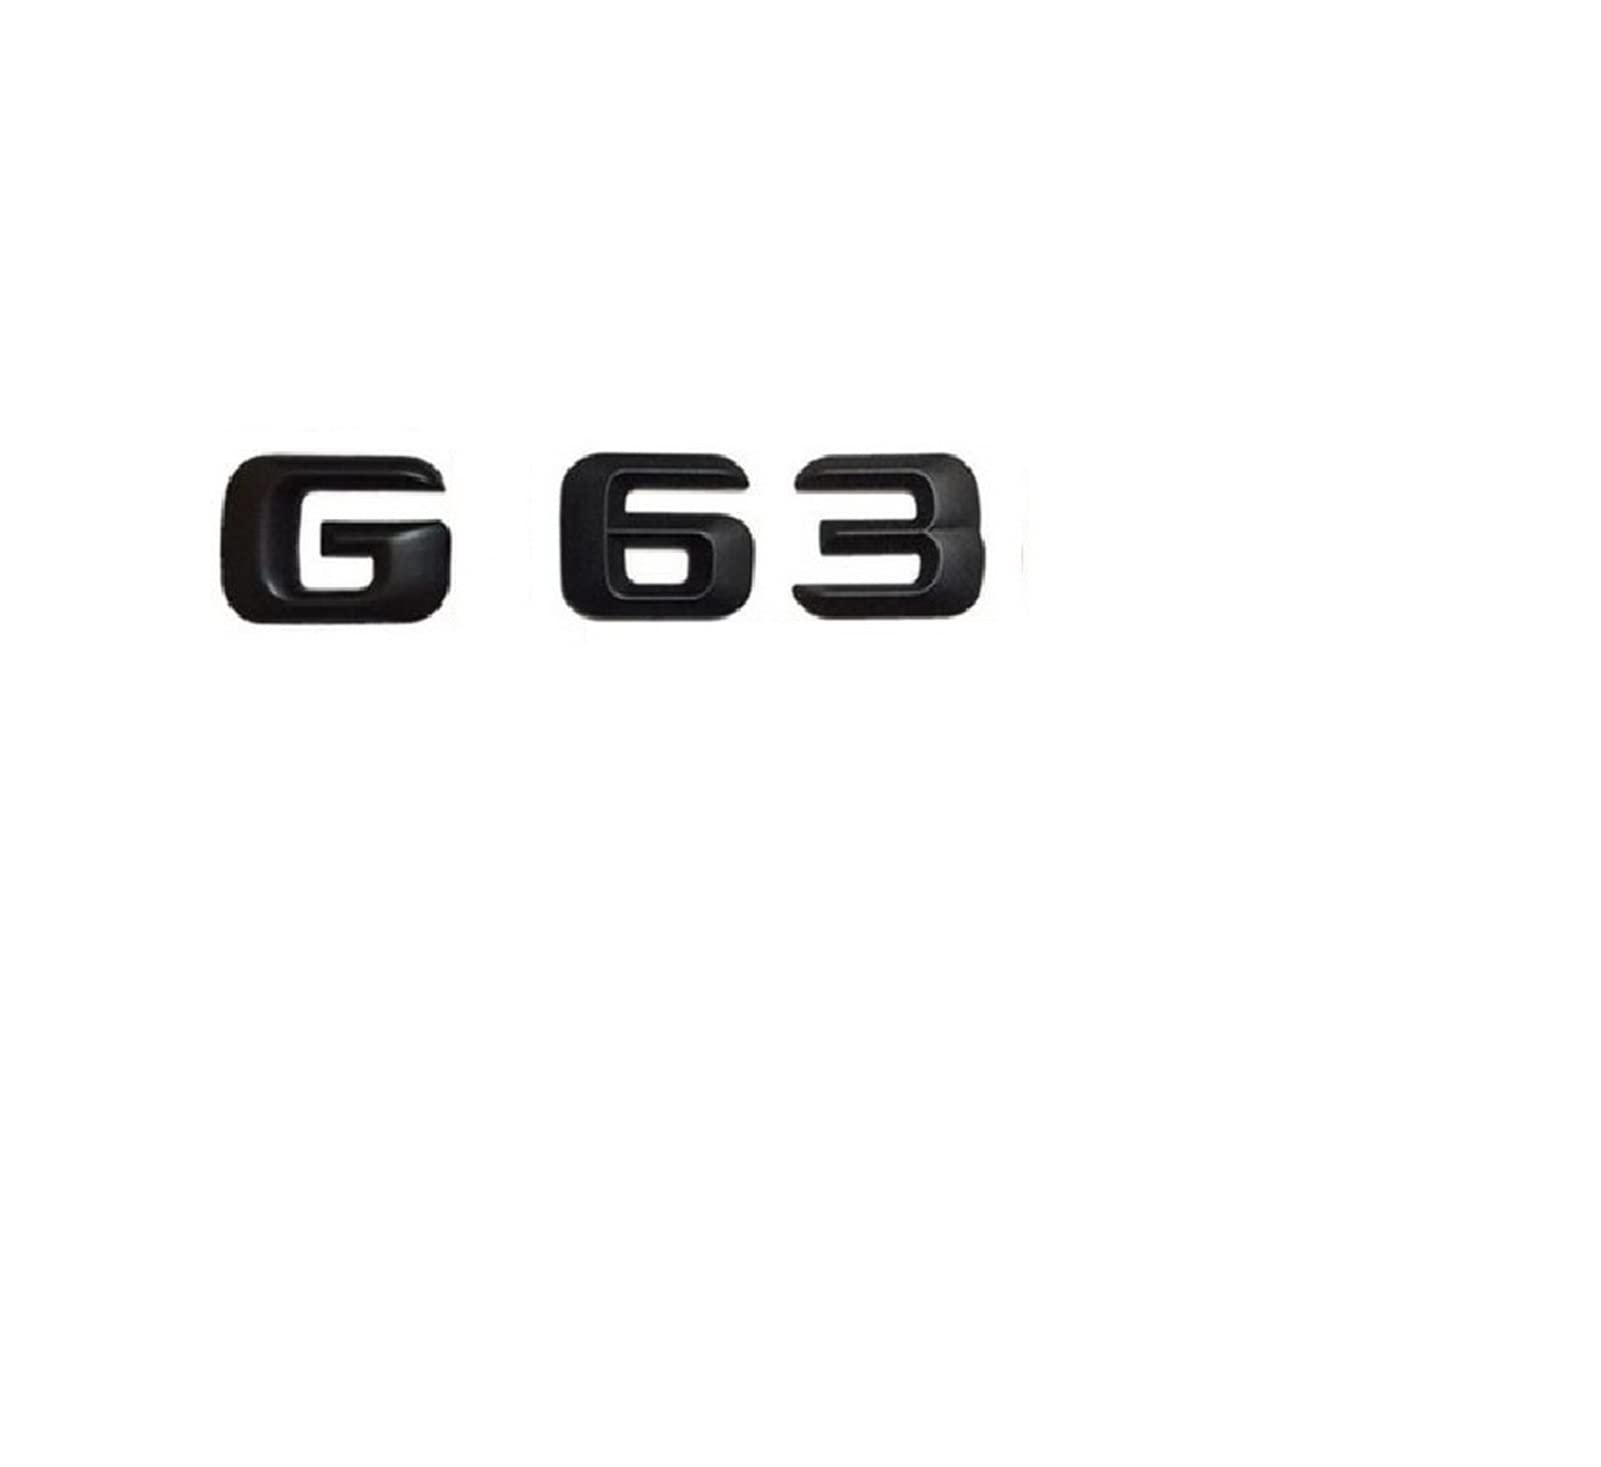 LHYFAGQK 1 Satz mattschwarzer ABS-Kofferraum-Hecknummer-Buchstaben-Wörter-Abzeichen-Emblem-Aufkleber-Aufkleber, kompatibel mit Mercedes Benz G63 AMG Abzeichen Autoaufkleber von LHYFAGQK